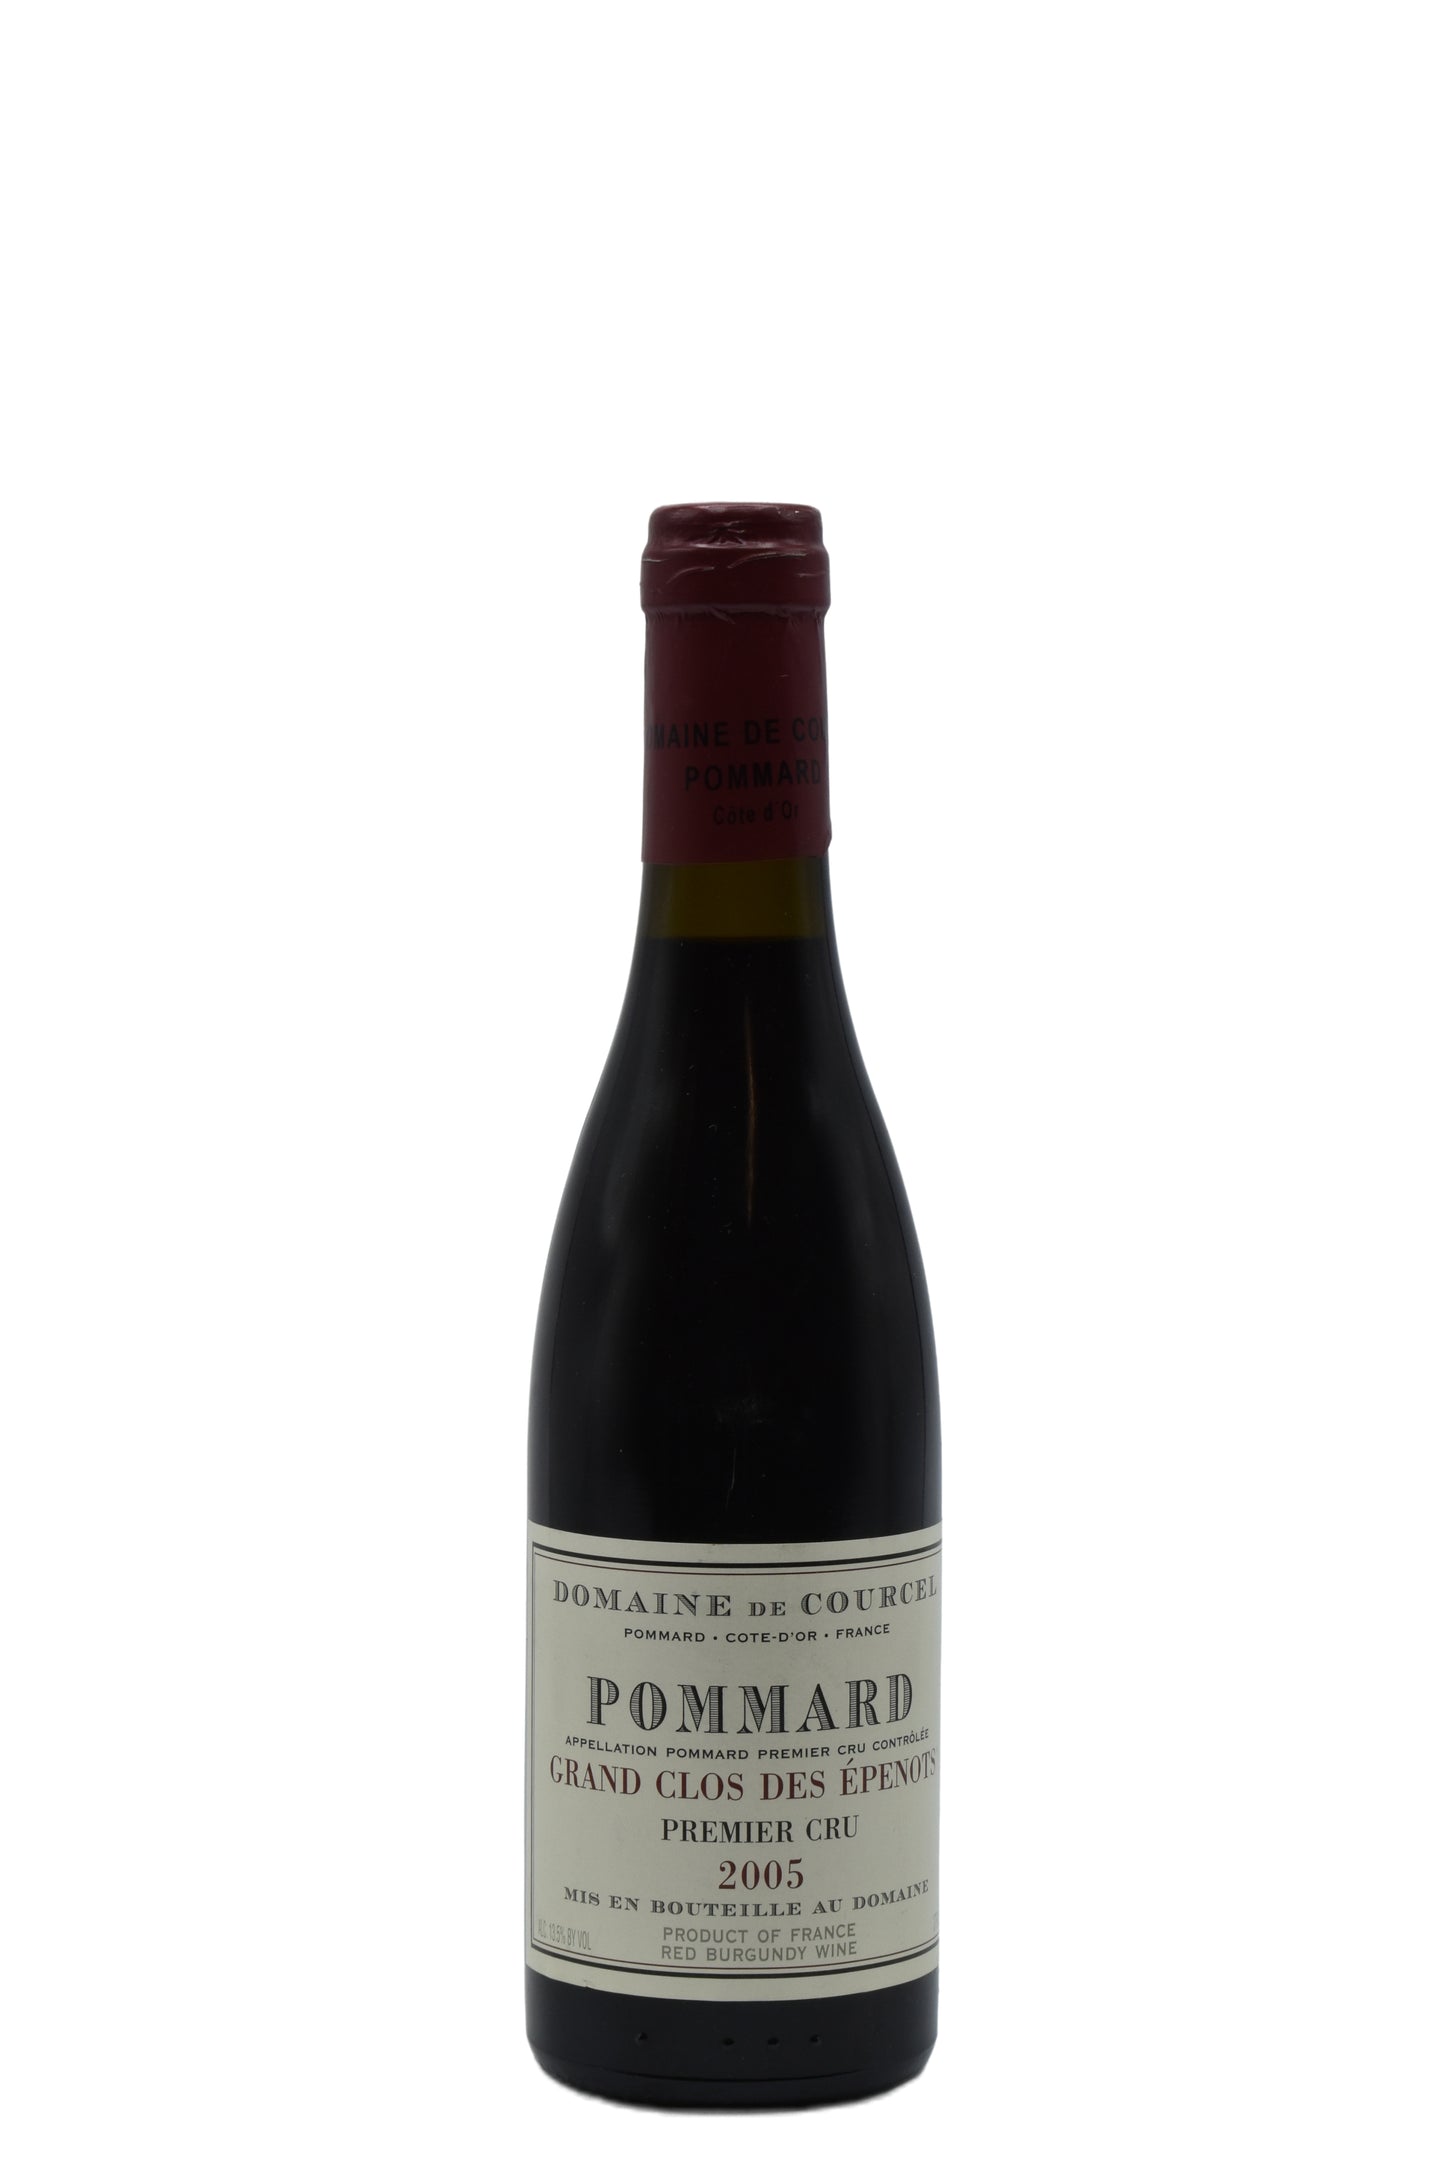 2005 Domaine de Courcel, Pommard Grand Clos des Epenots 1er Cru 375ml - Walker Wine Co.